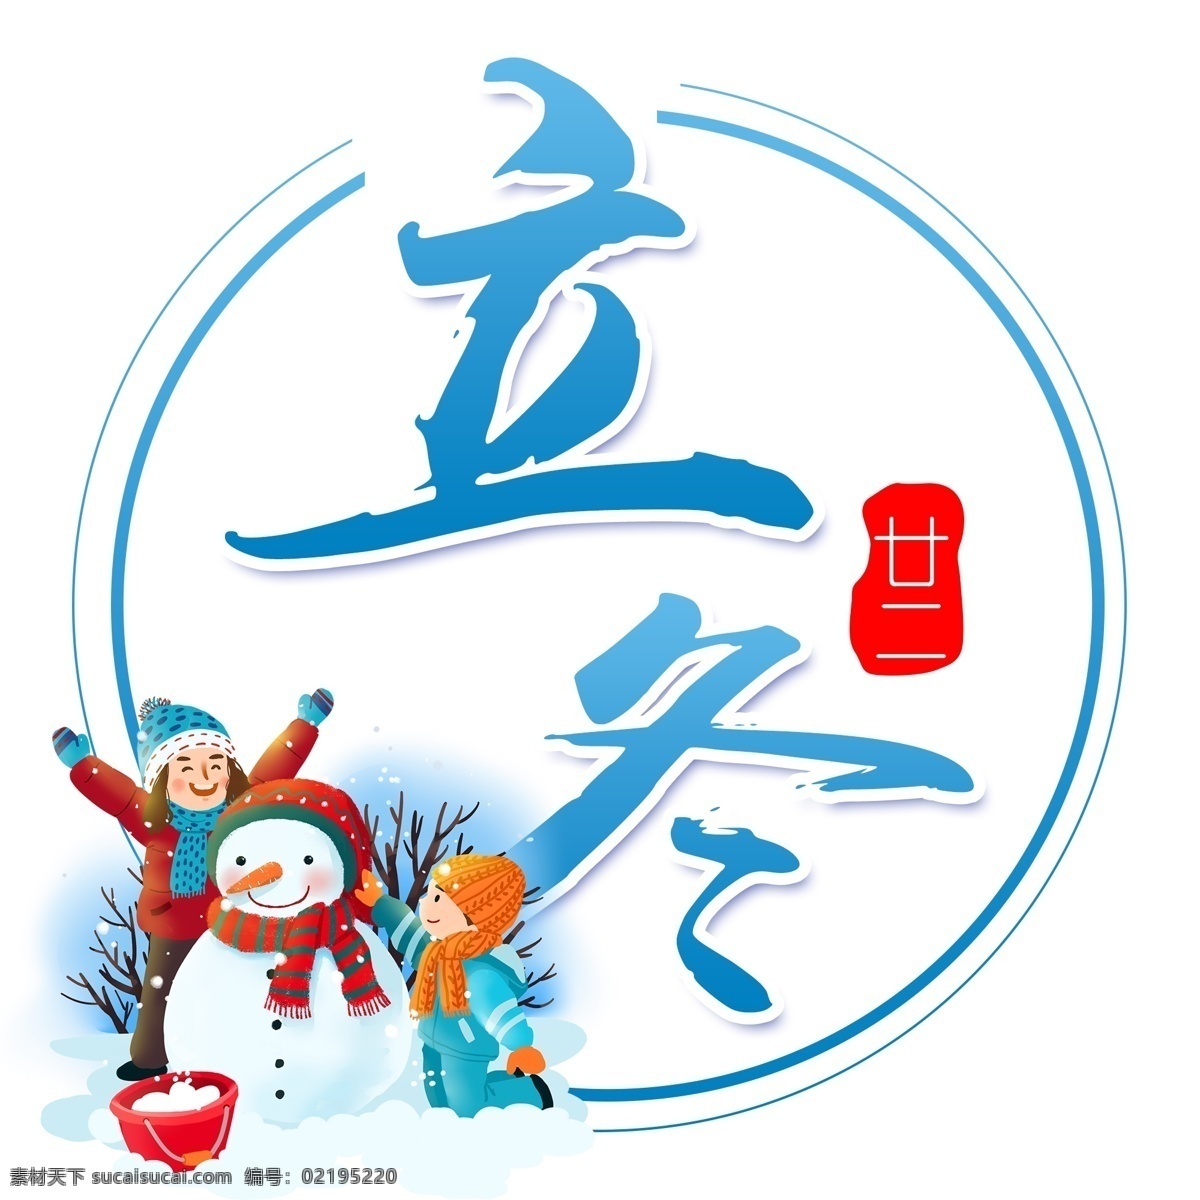 二十四节气 立冬 传统节气 中国风 古风 书法字体 创意毛笔字 分层